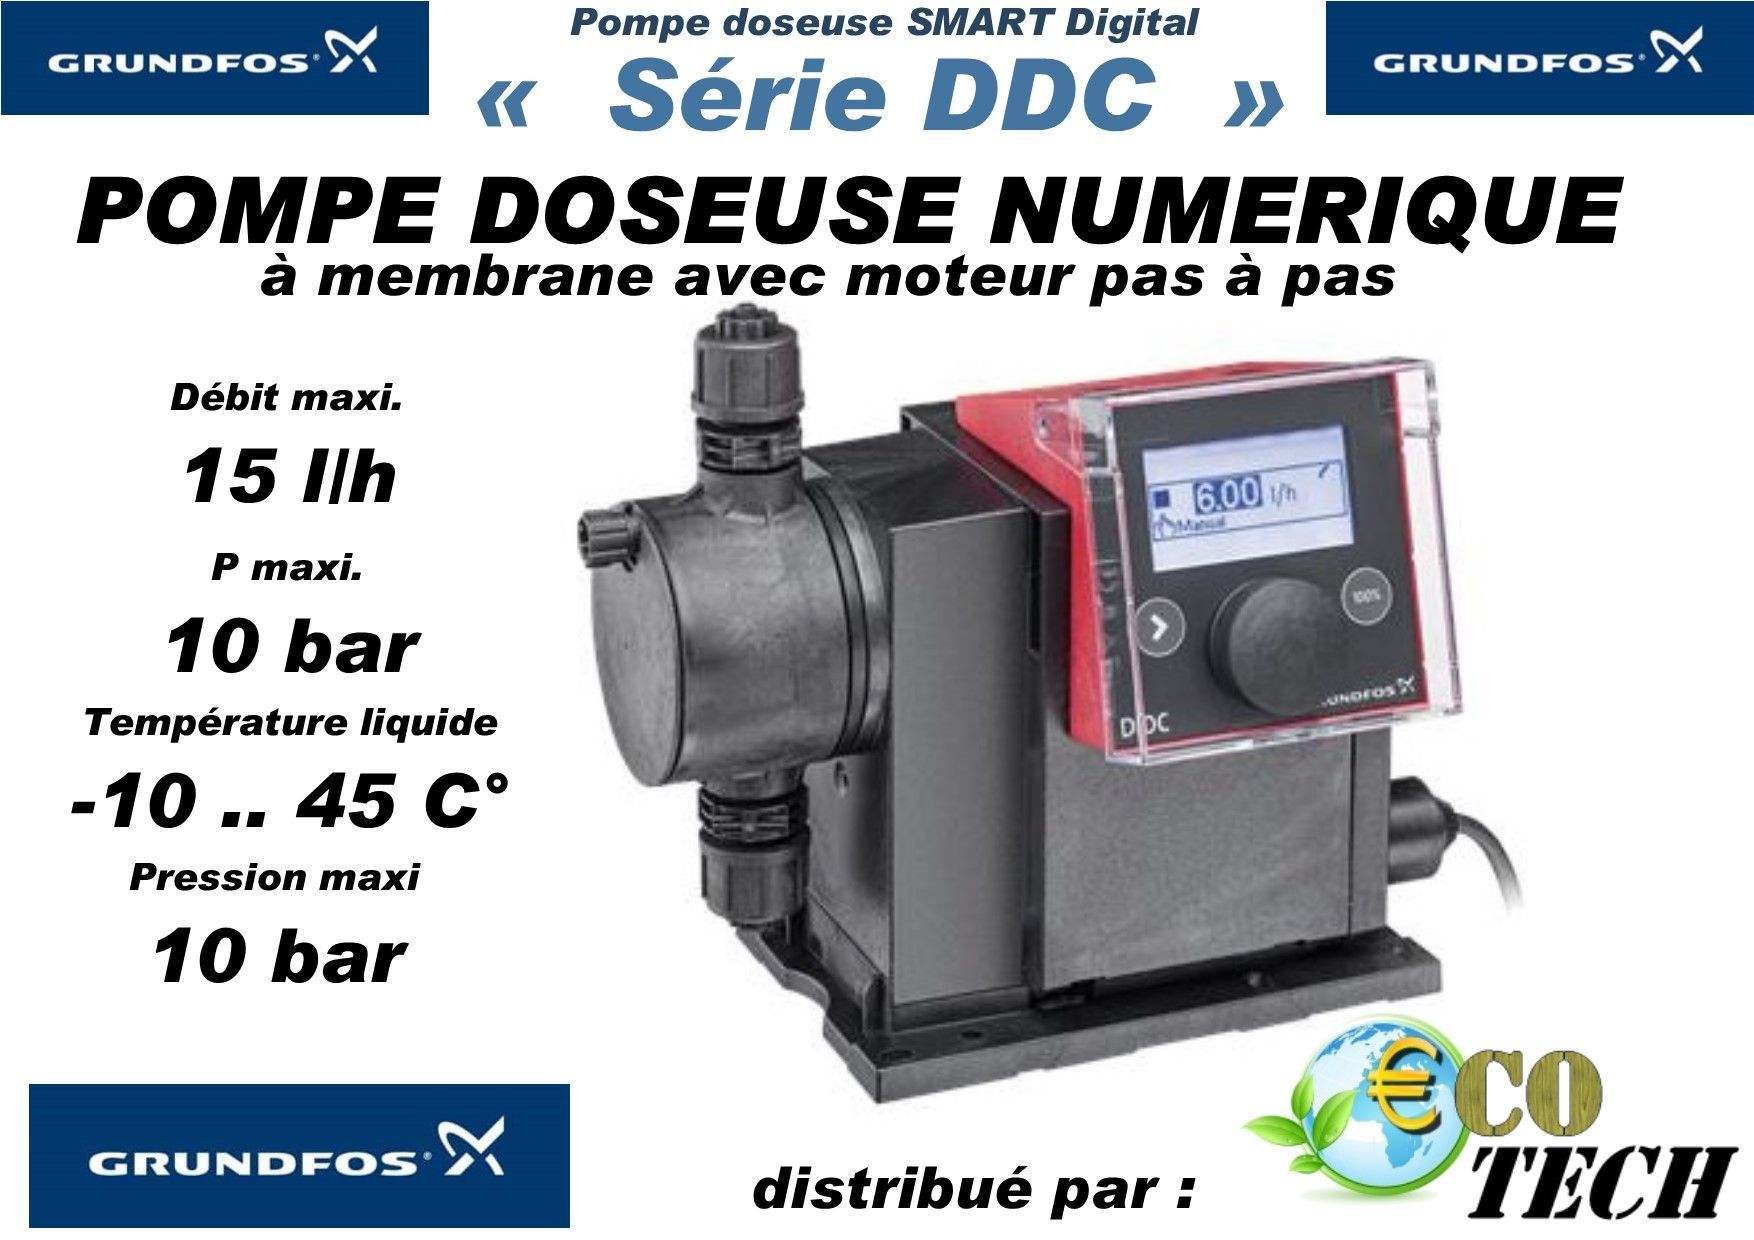 Grundfos smart digital ddc - pompe doseuse haute précision débit maxi 15l/h_0